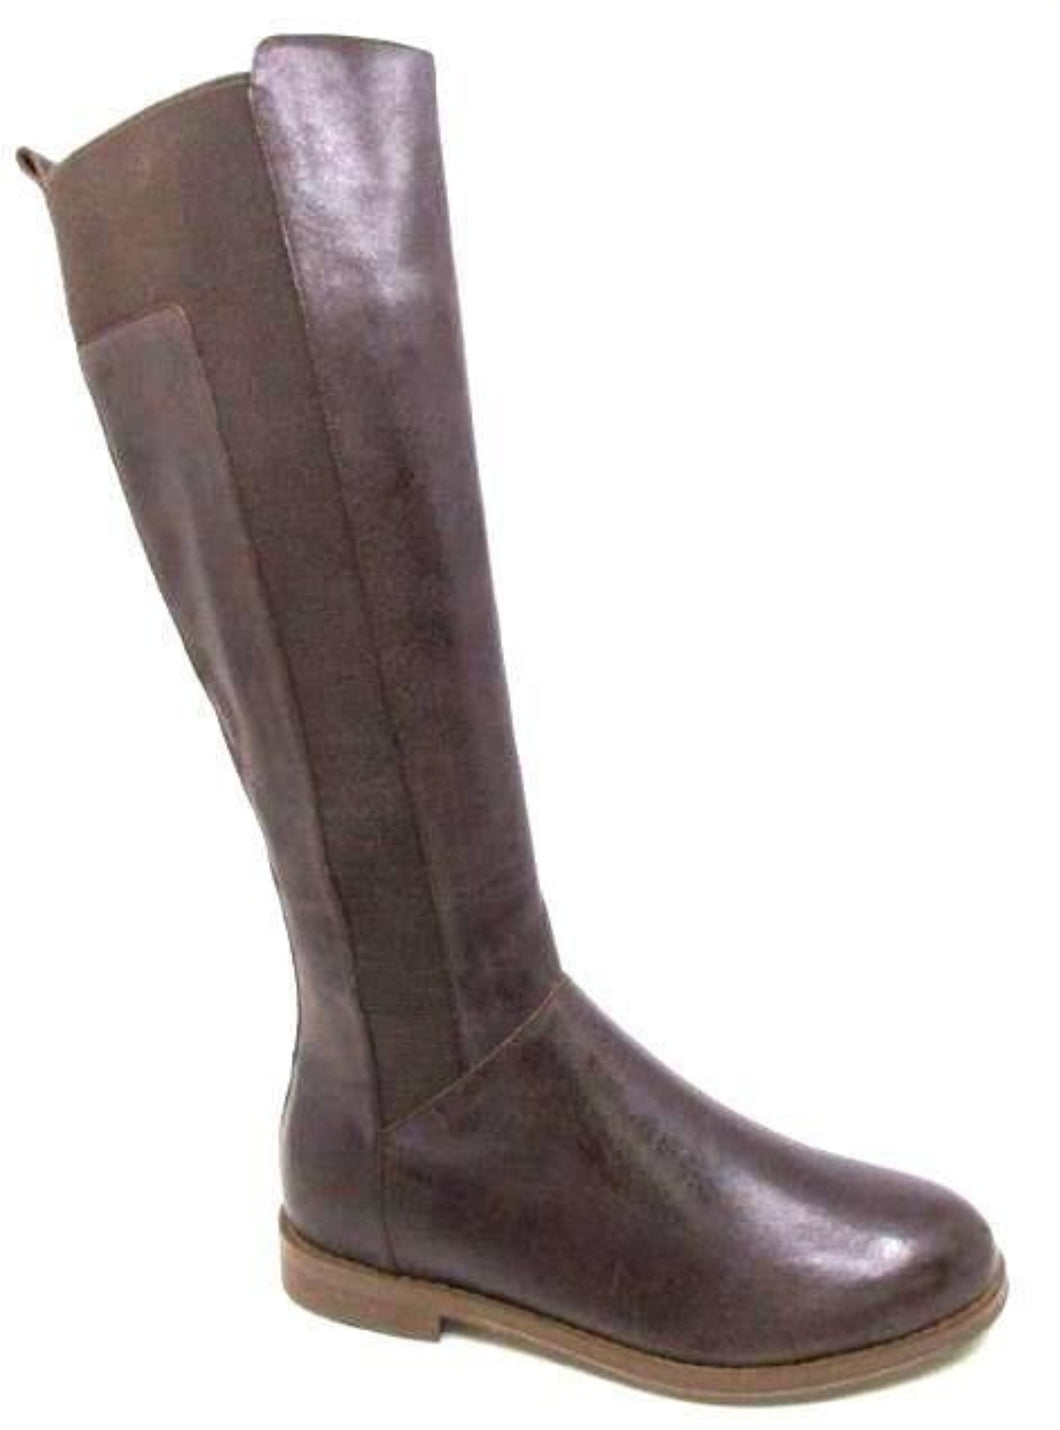 Django & Juliette - Youss Boots, Choc Leather